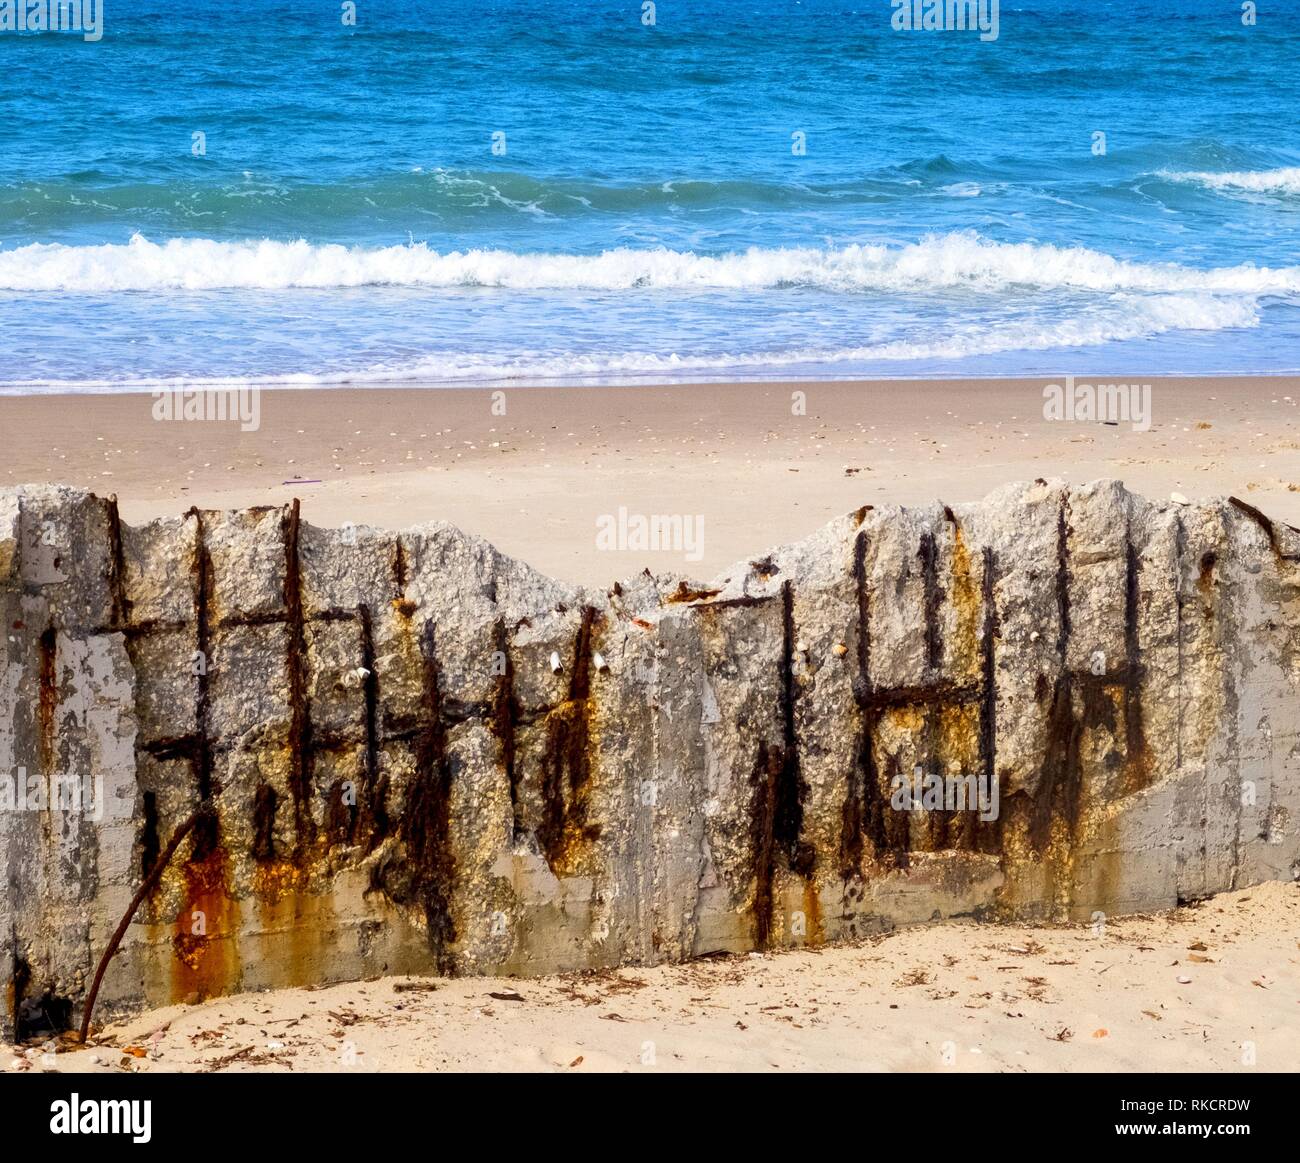 Struttura in cemento armato sulla spiaggia, crolli da umidità e corrosione Foto Stock